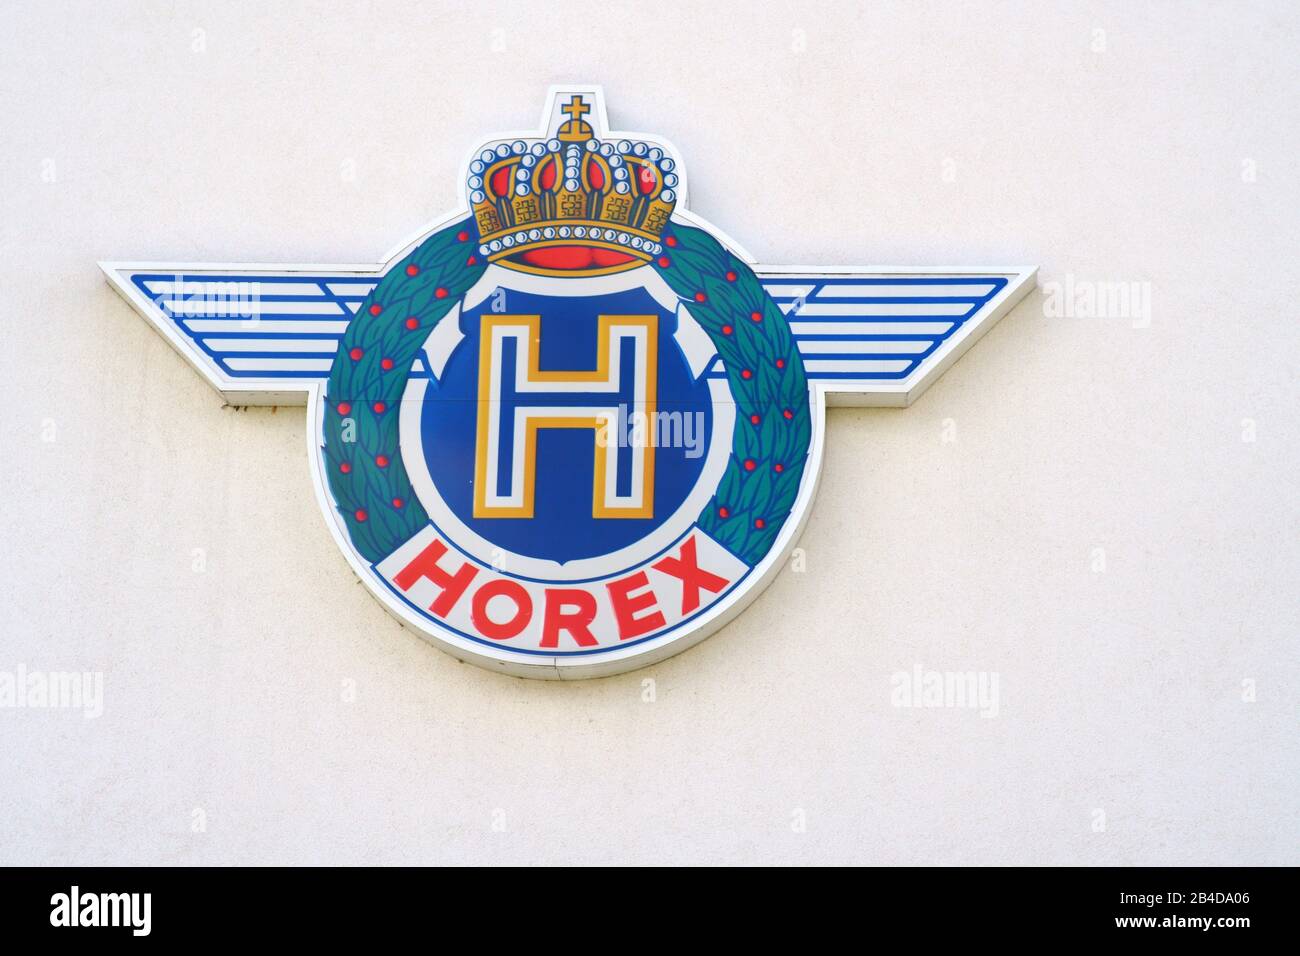 Les armoiries et le logo du fabricant de motocyclettes Horex dans un musée de Bad Homburg. Banque D'Images